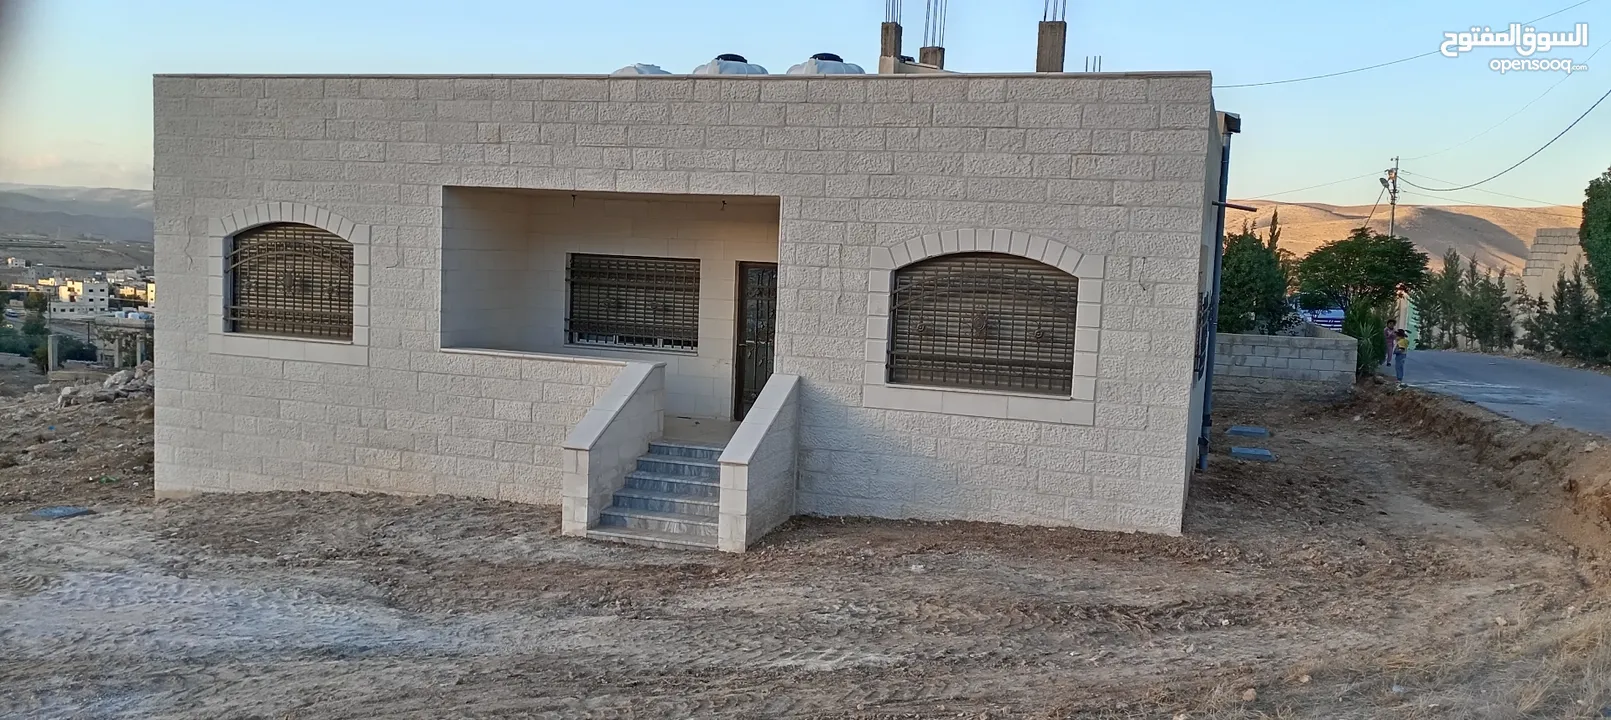 بيت واجهة حجر 140 متر في الرحيل